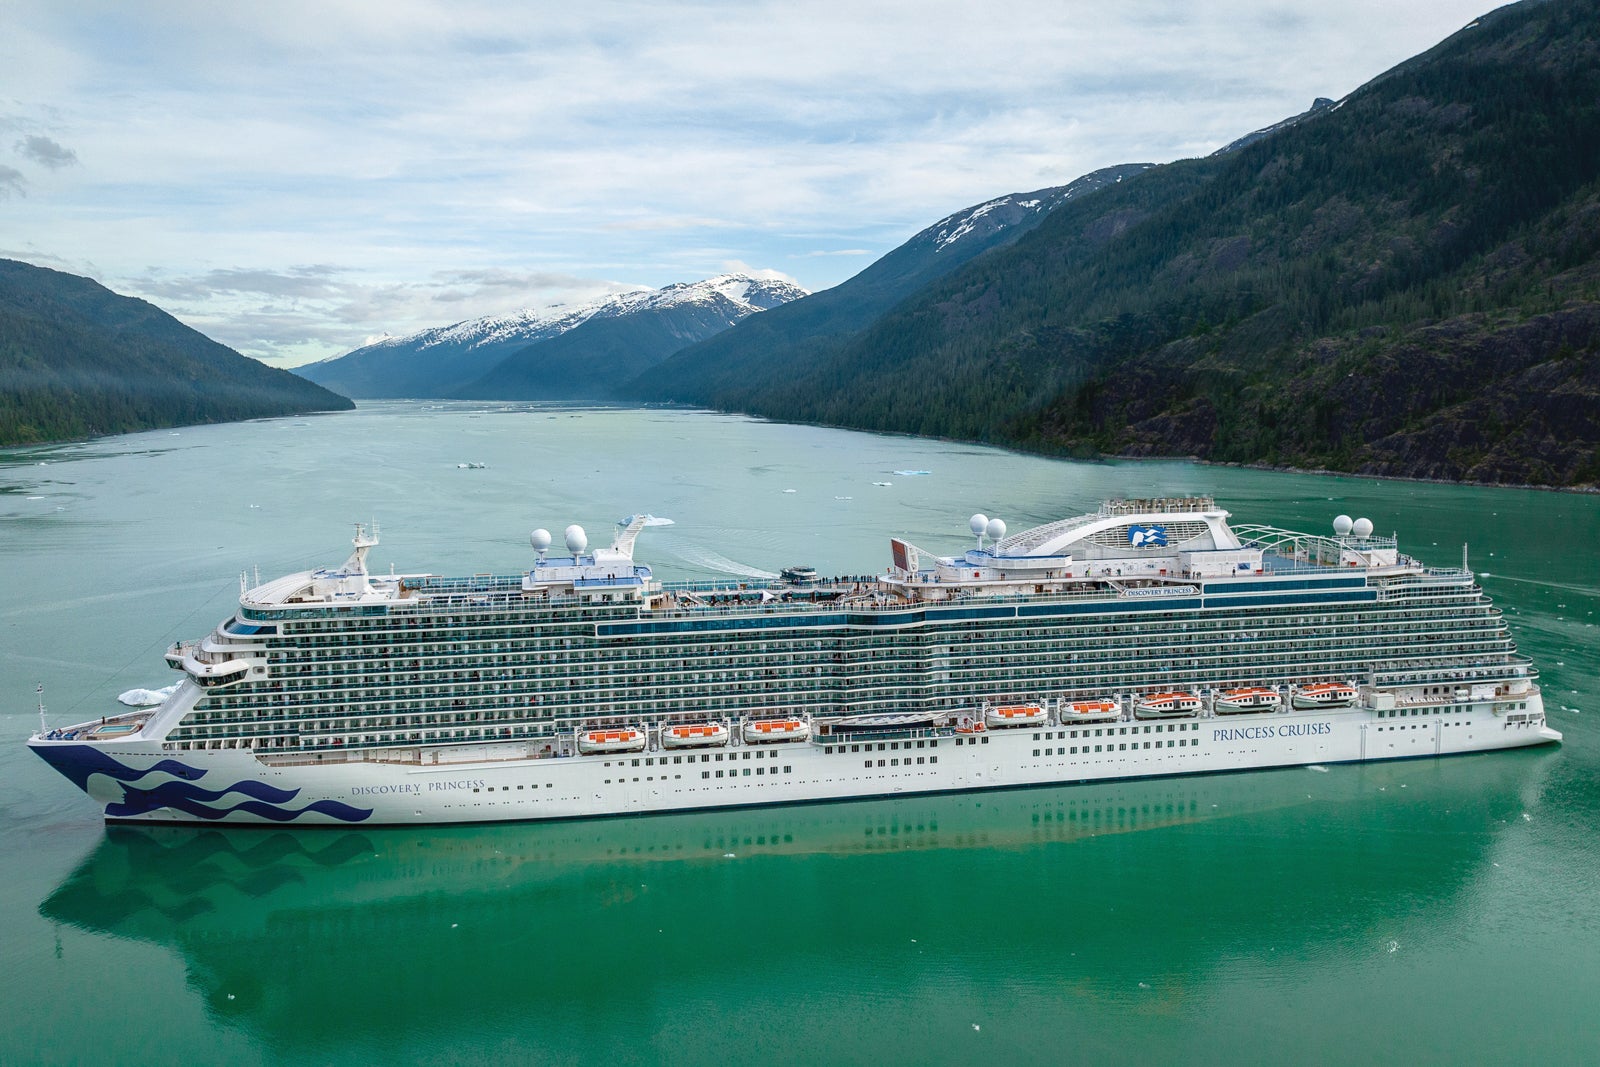 PRINCESS CRUISES EXTERIORS Princes Cruises Discovery Princess in Alaska